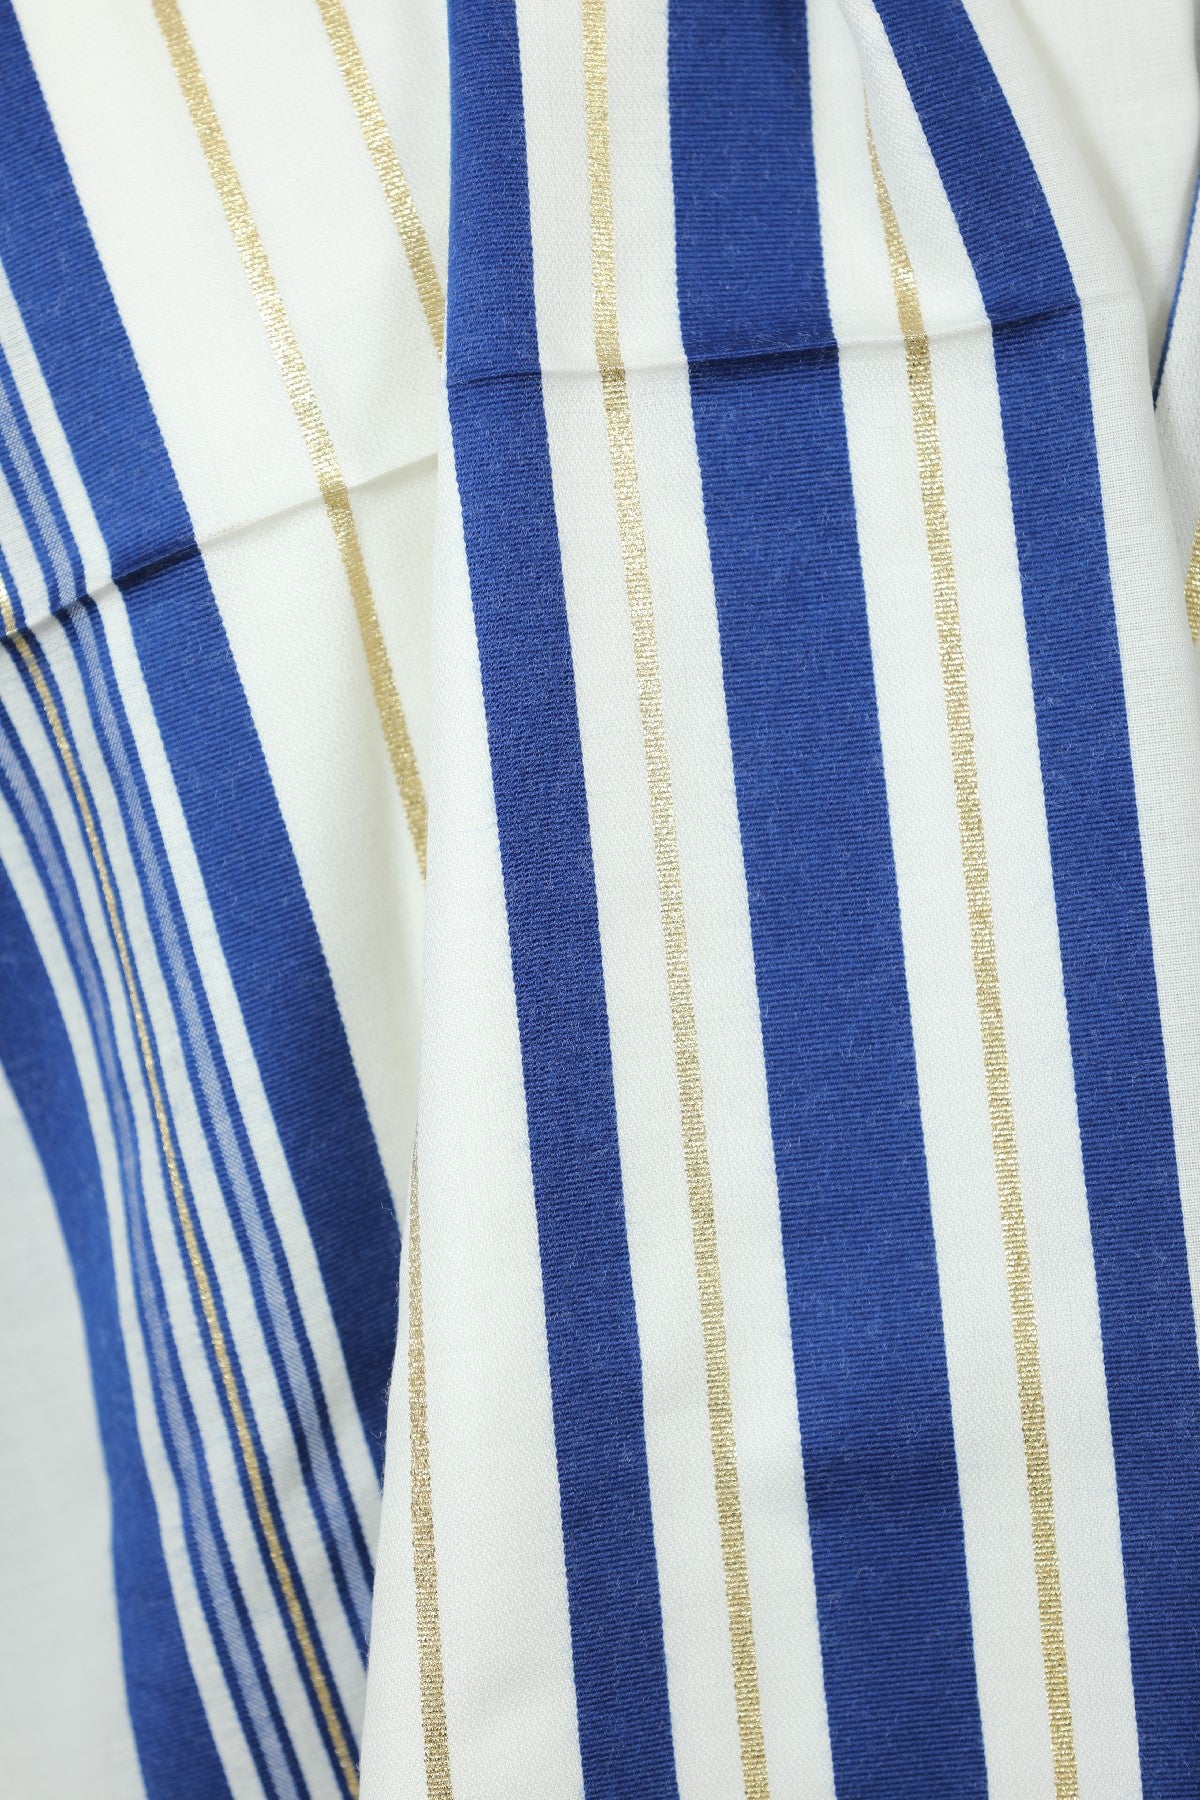 Wool Tallit [Blue & Gold Stripes] XXXS-L, TALITANIA